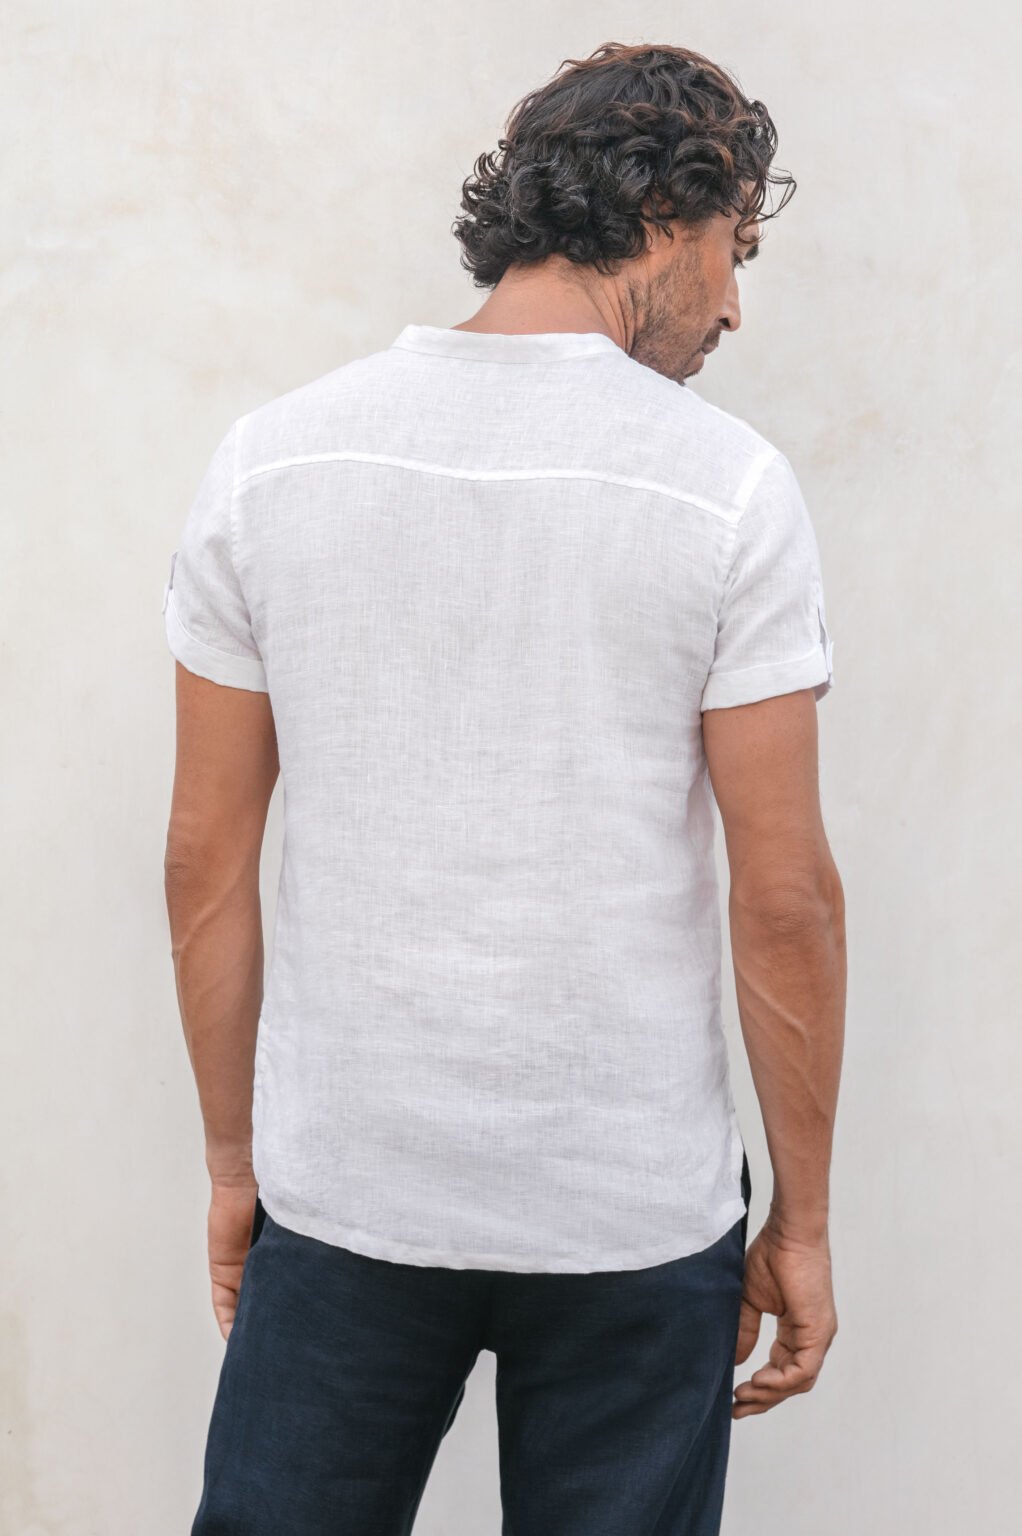 Men Split VNeck Linen Shirt Short Sleeve